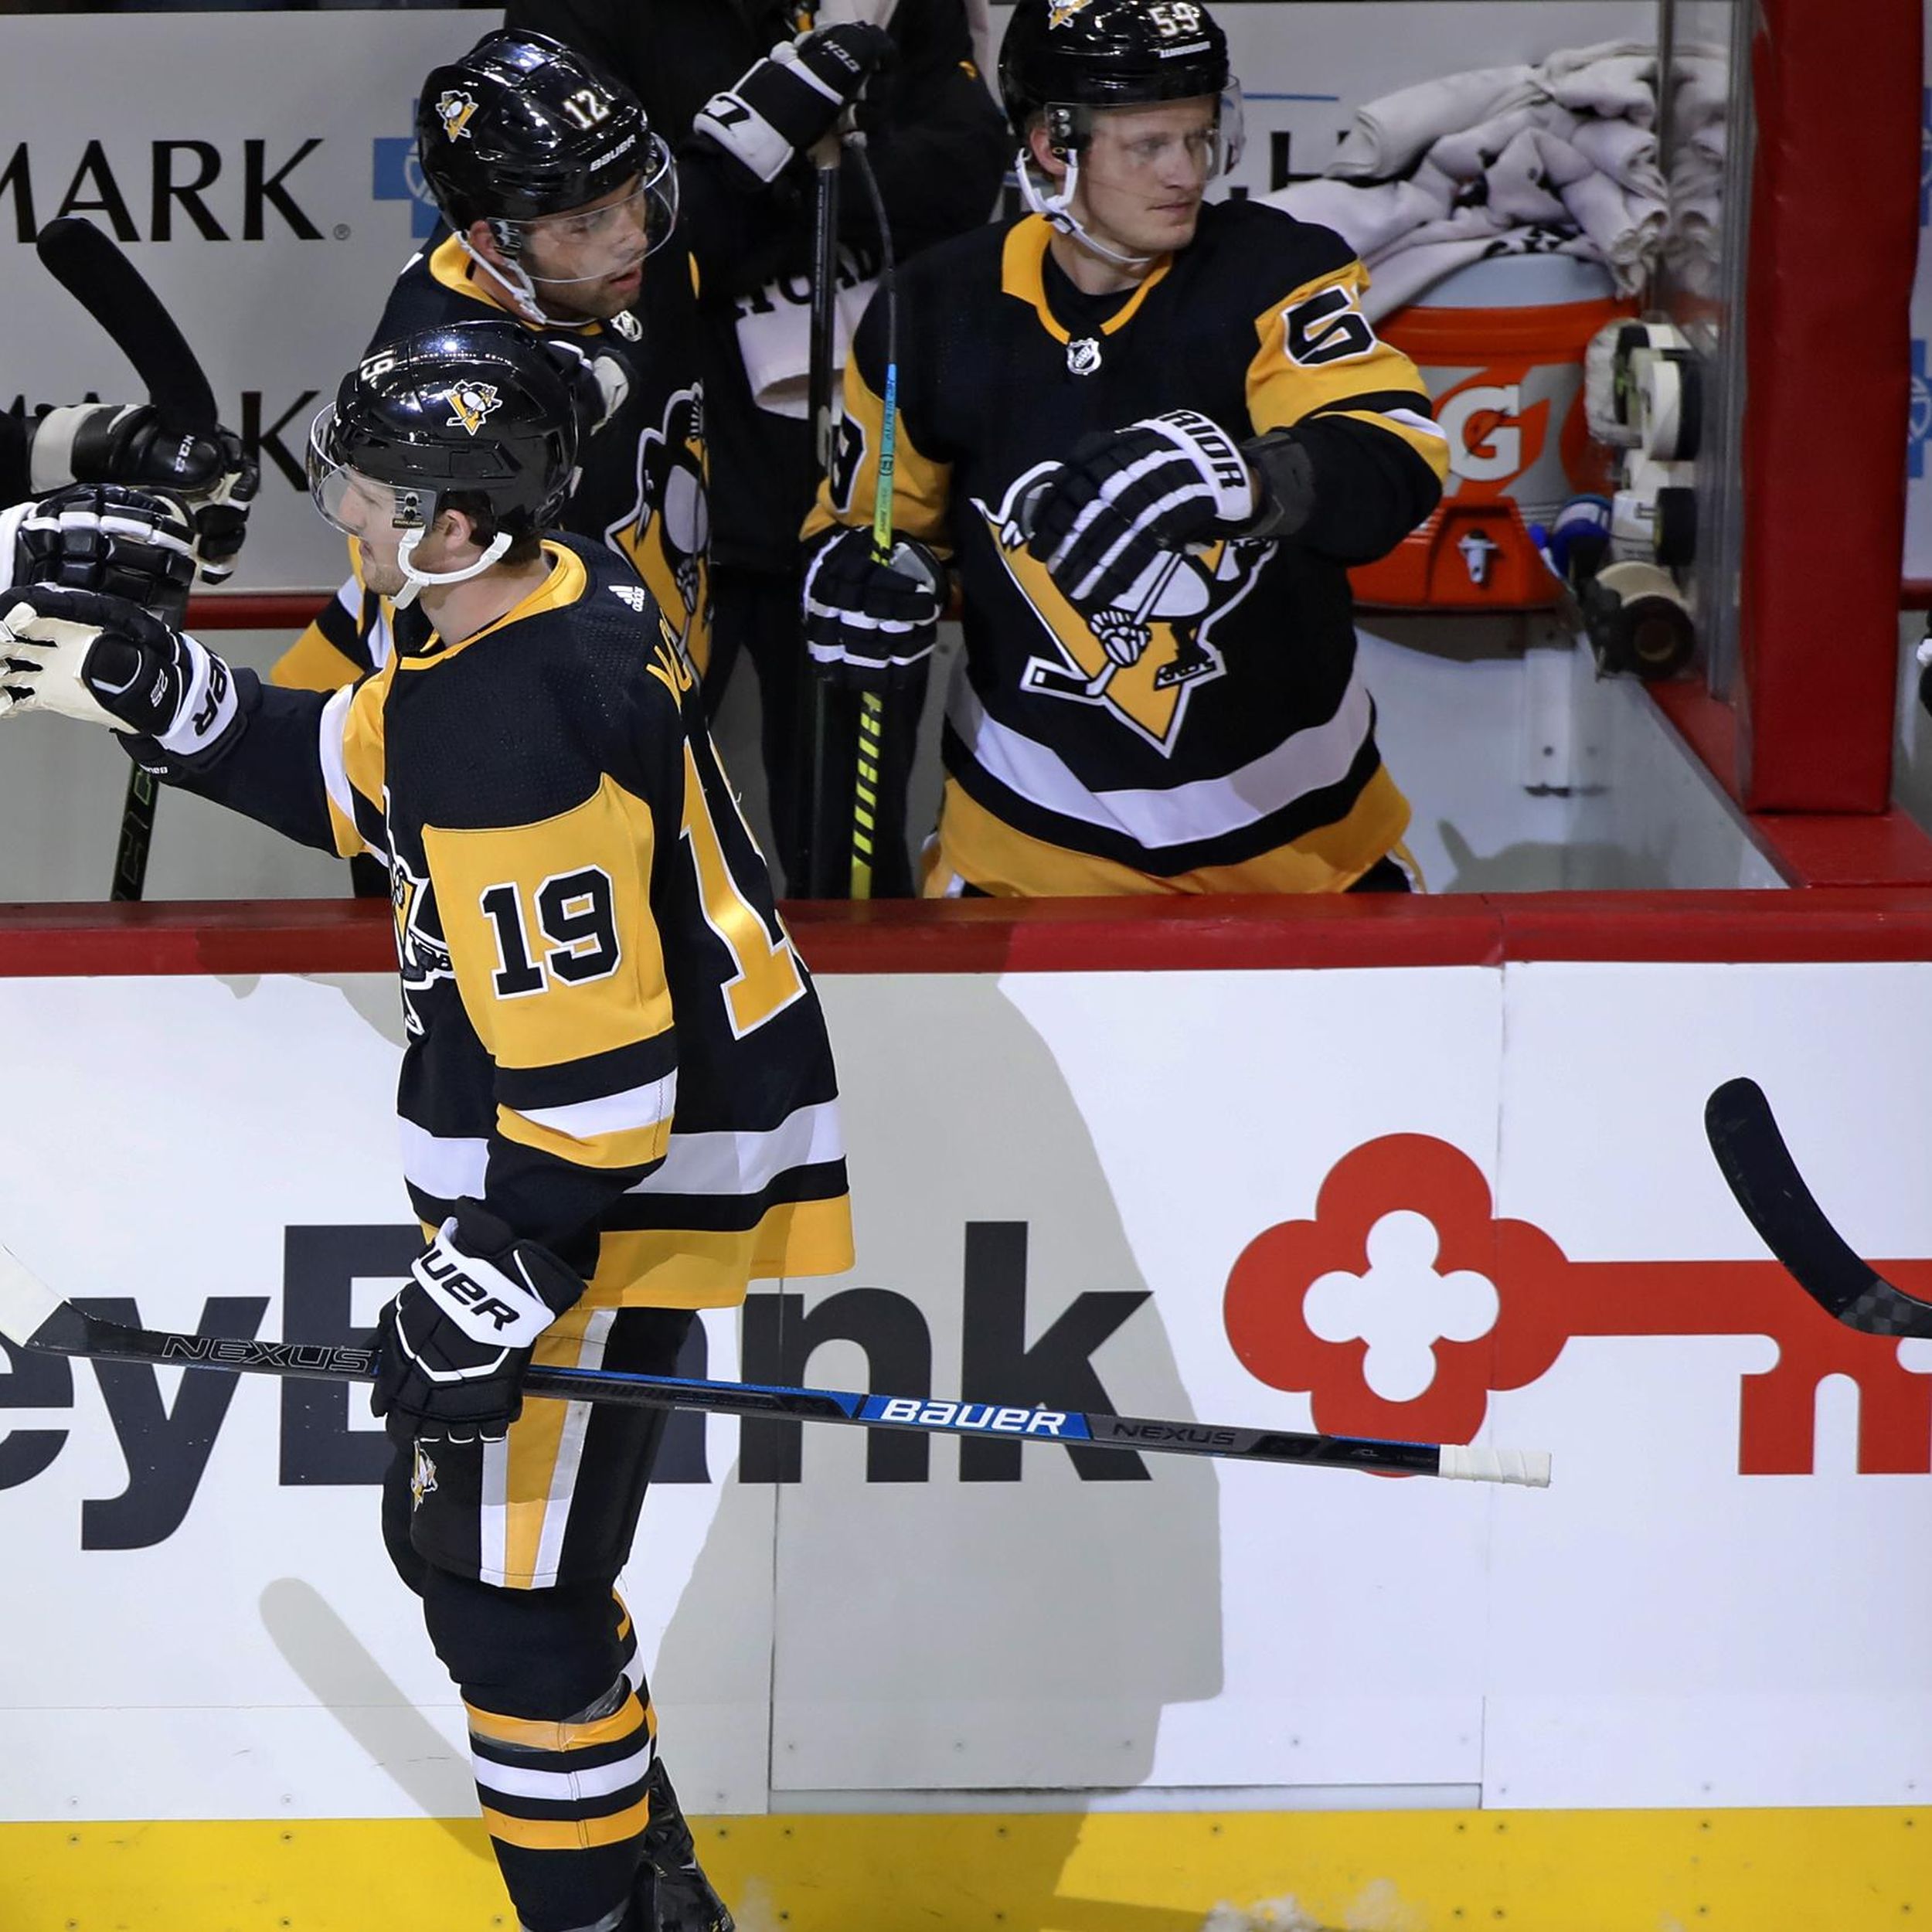 Lindholm's OT goal lifts Bruins over Penguins